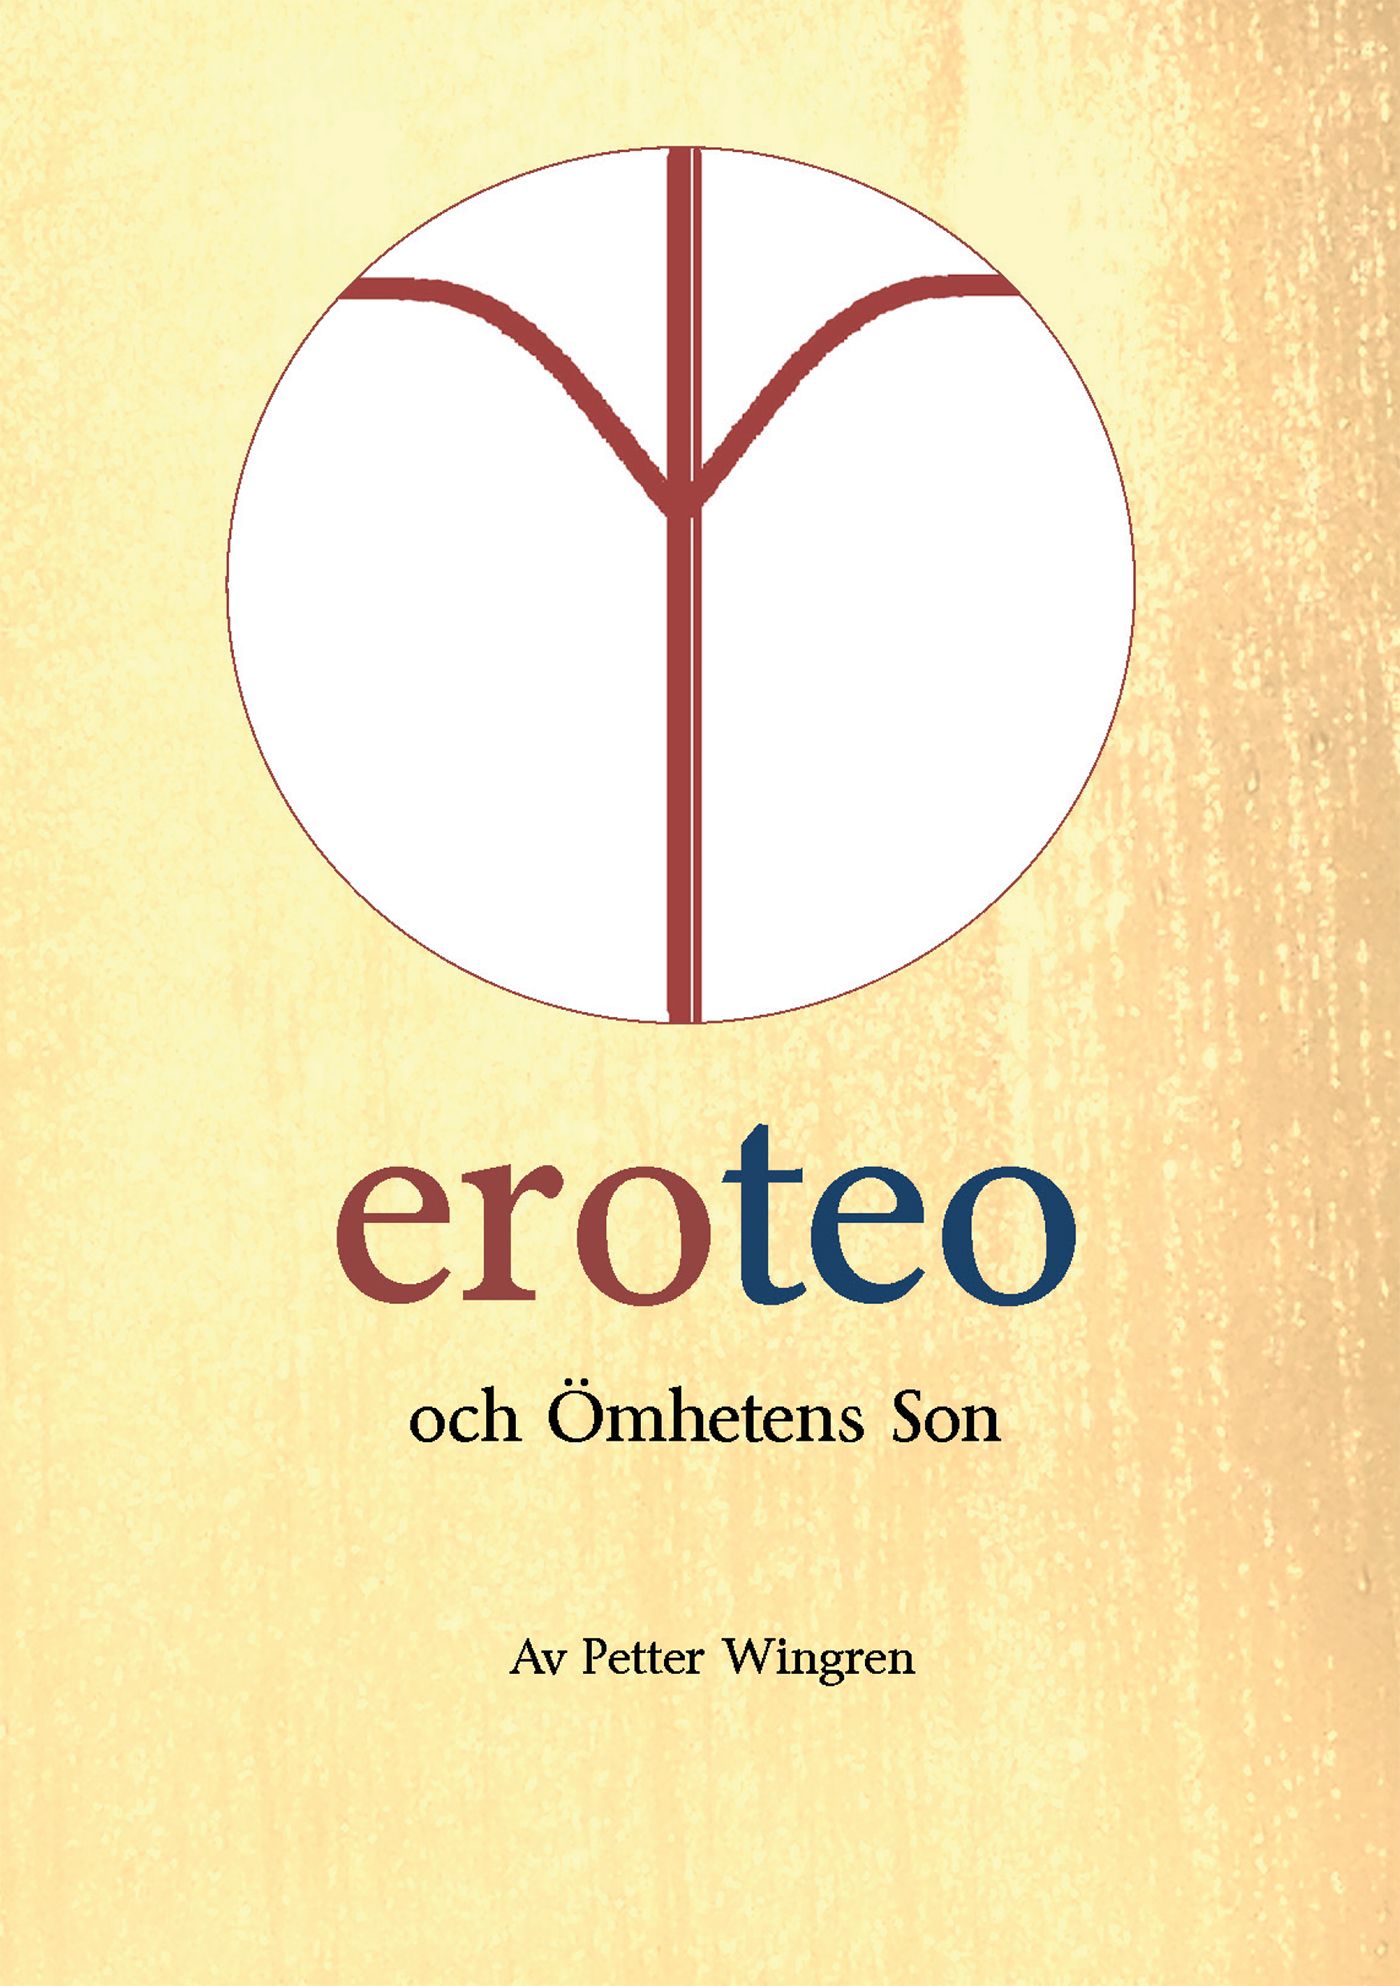 eroteo och ömhetens son, eBook by Petter Wingren